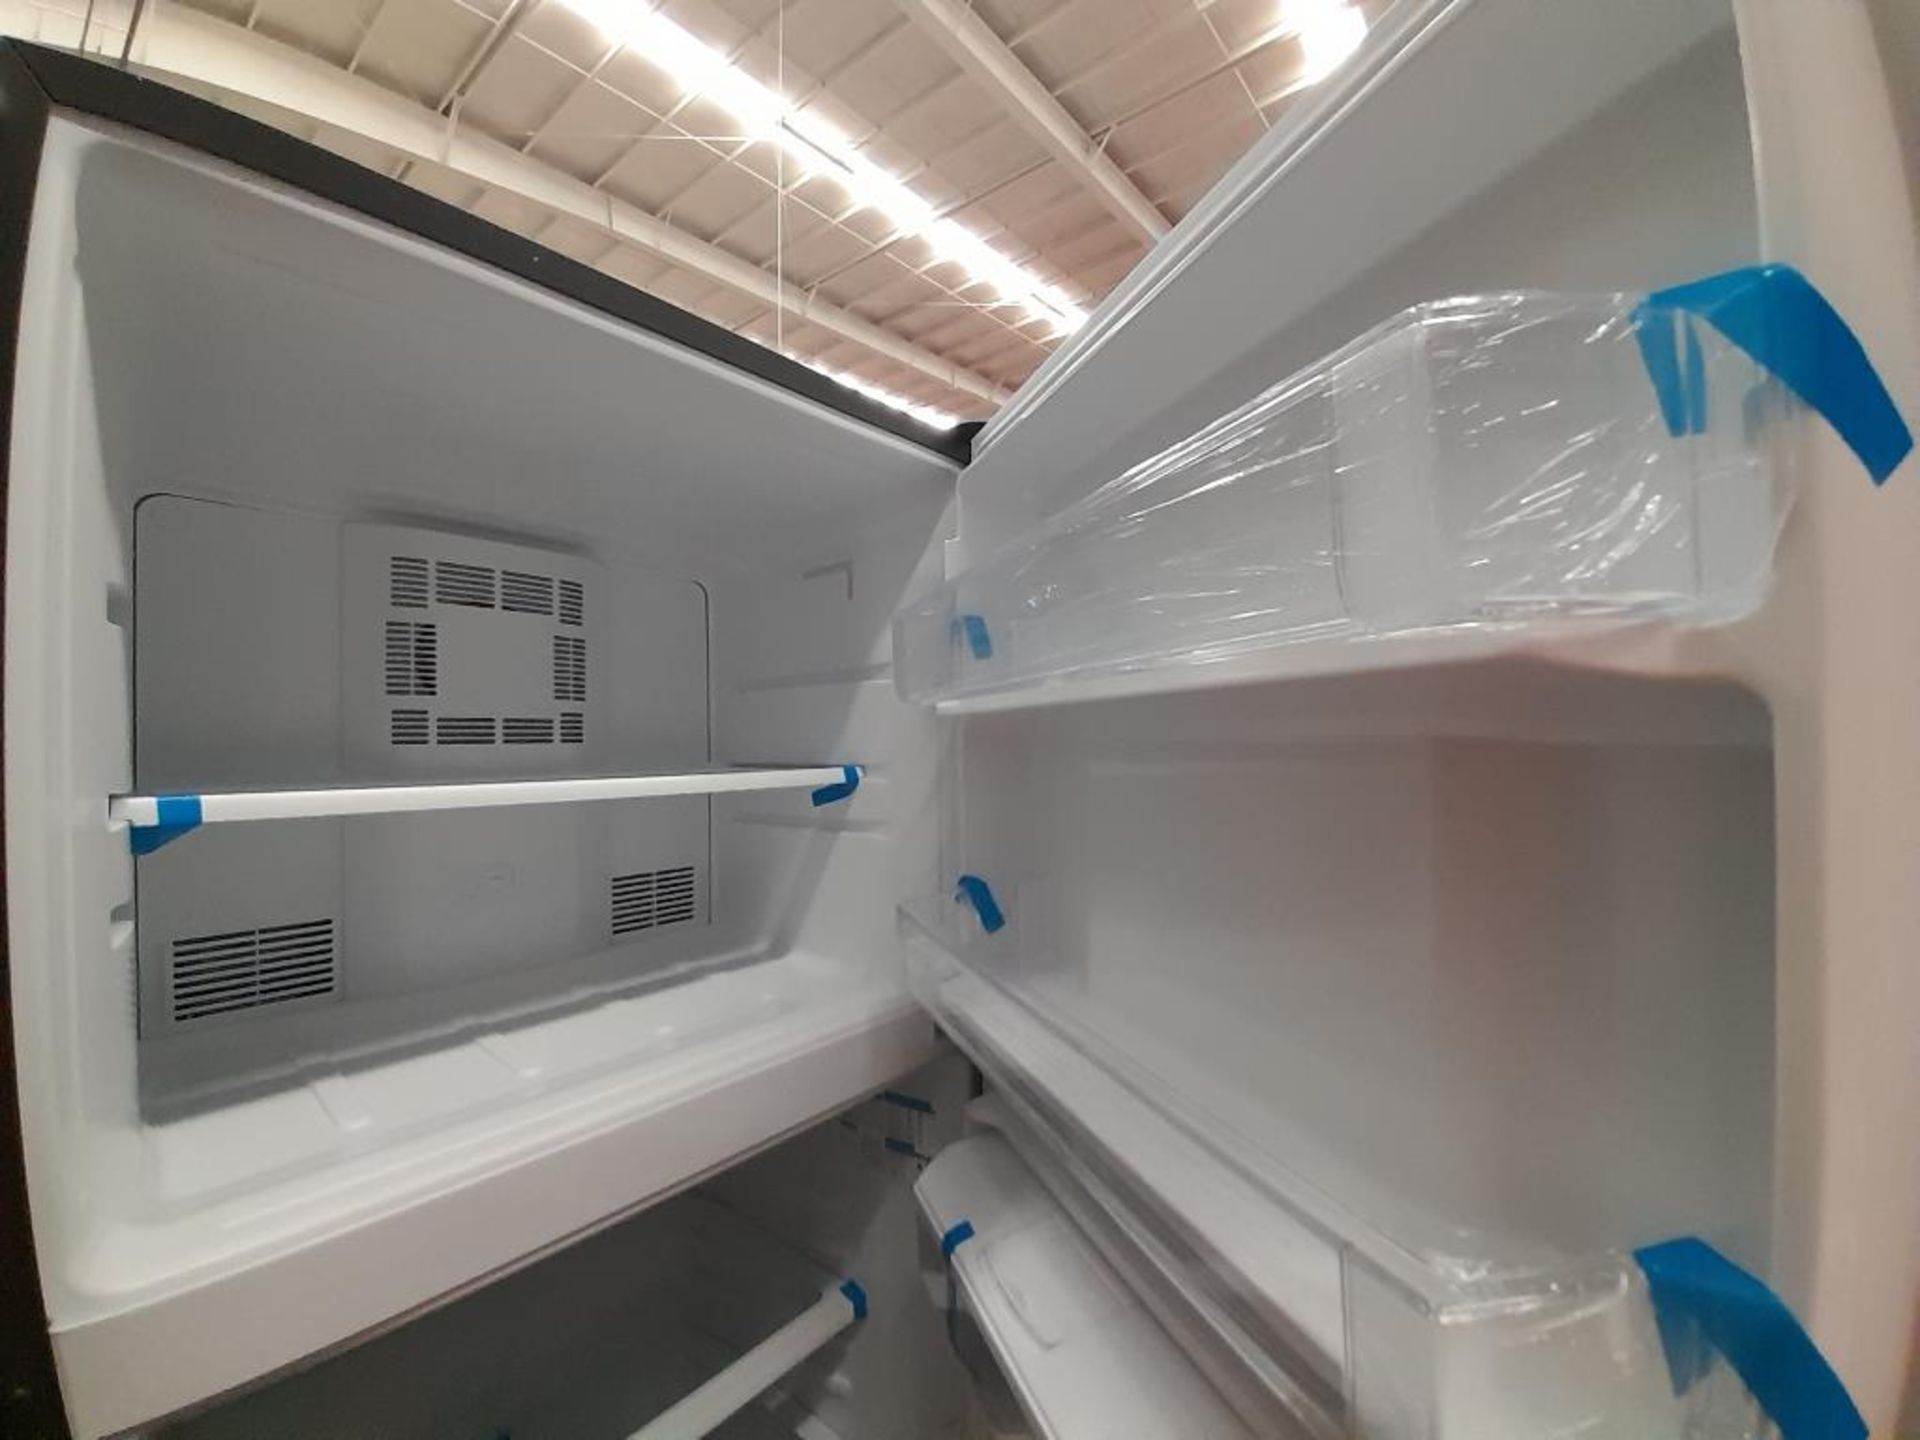 Lote de 2 refrigeradores contiene: 1 Refrigerador Con Dispensador De Agua Marca MABE, Modelo RME360 - Image 6 of 7